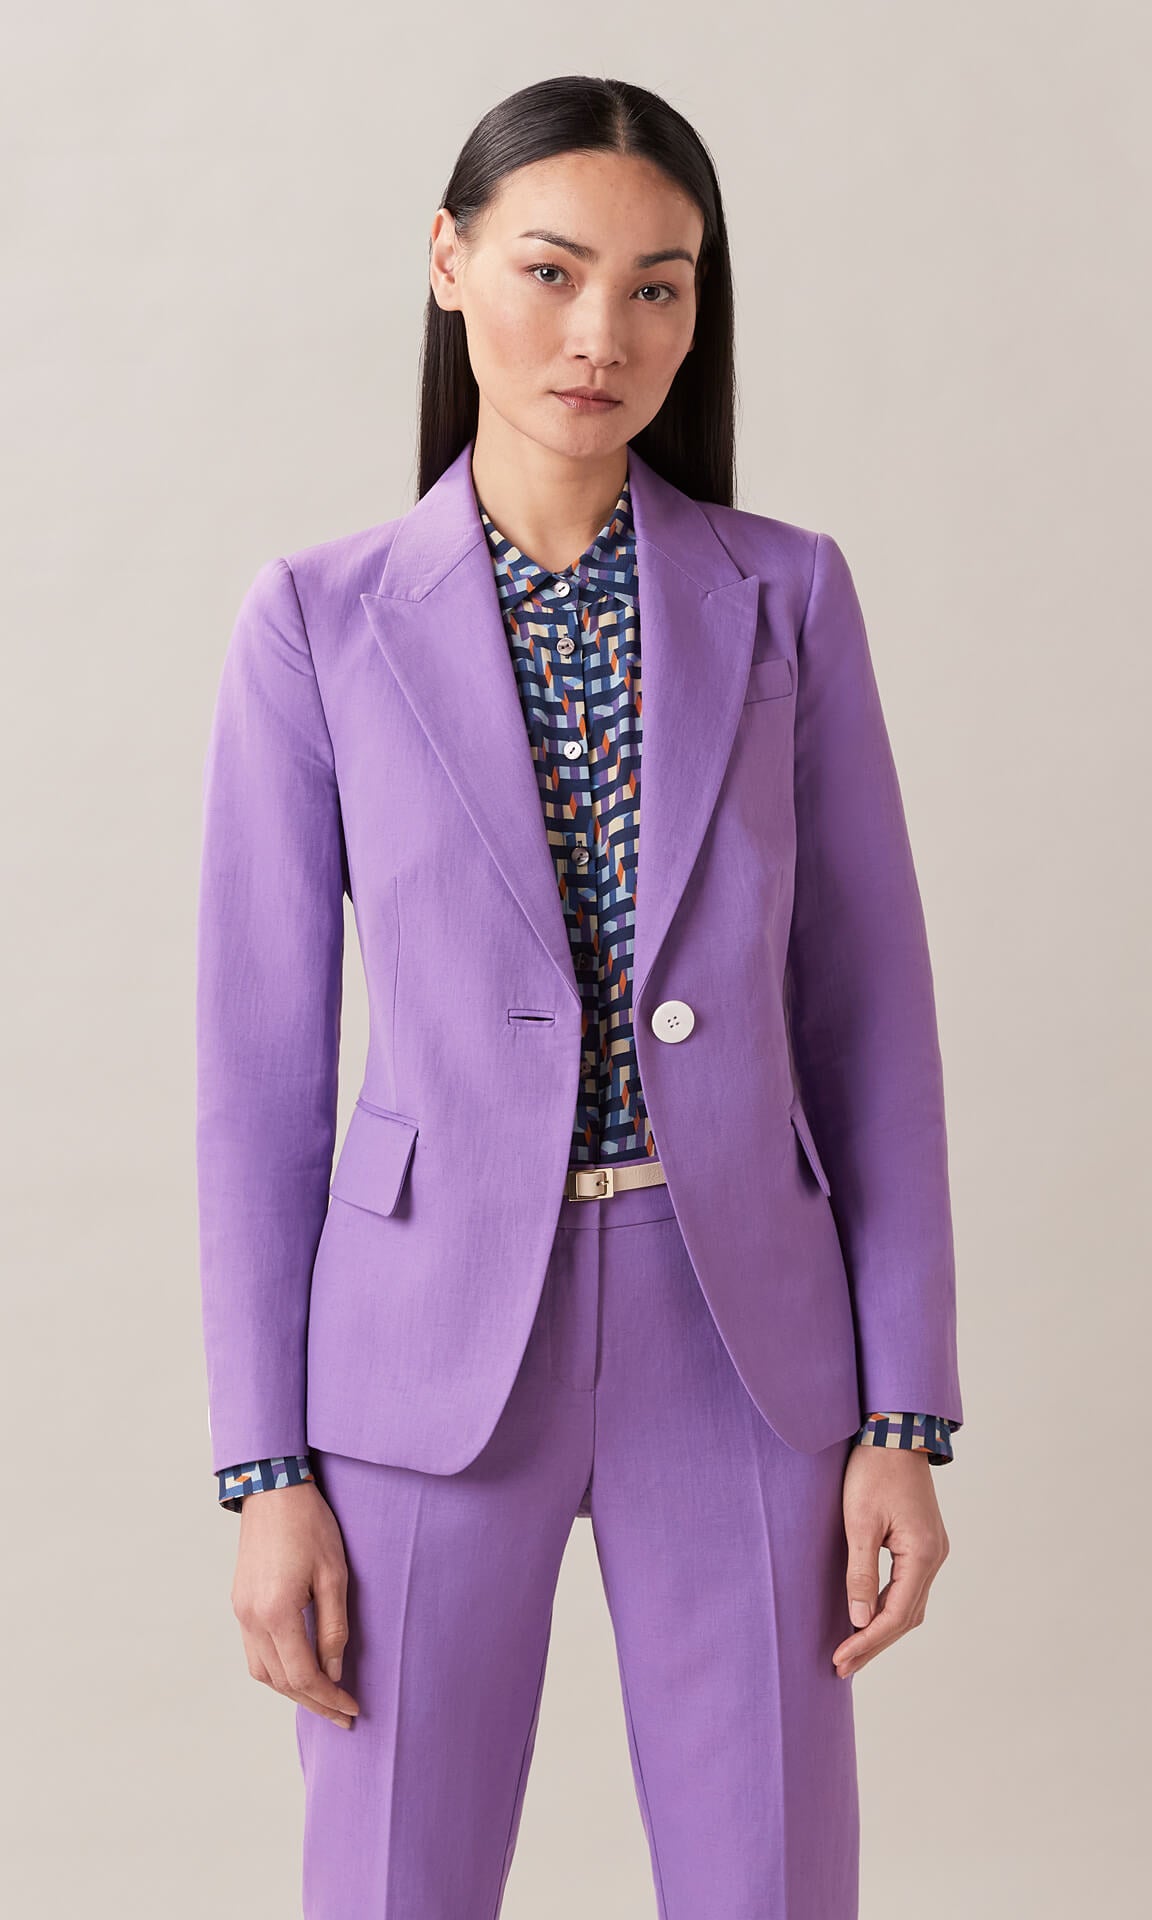 Francis Blazer Jacket Designer Blazers Women purple Suit Jacket purple Blazer longline blazer women's designer workwear Australia tailored jacket work jacket linen blazer